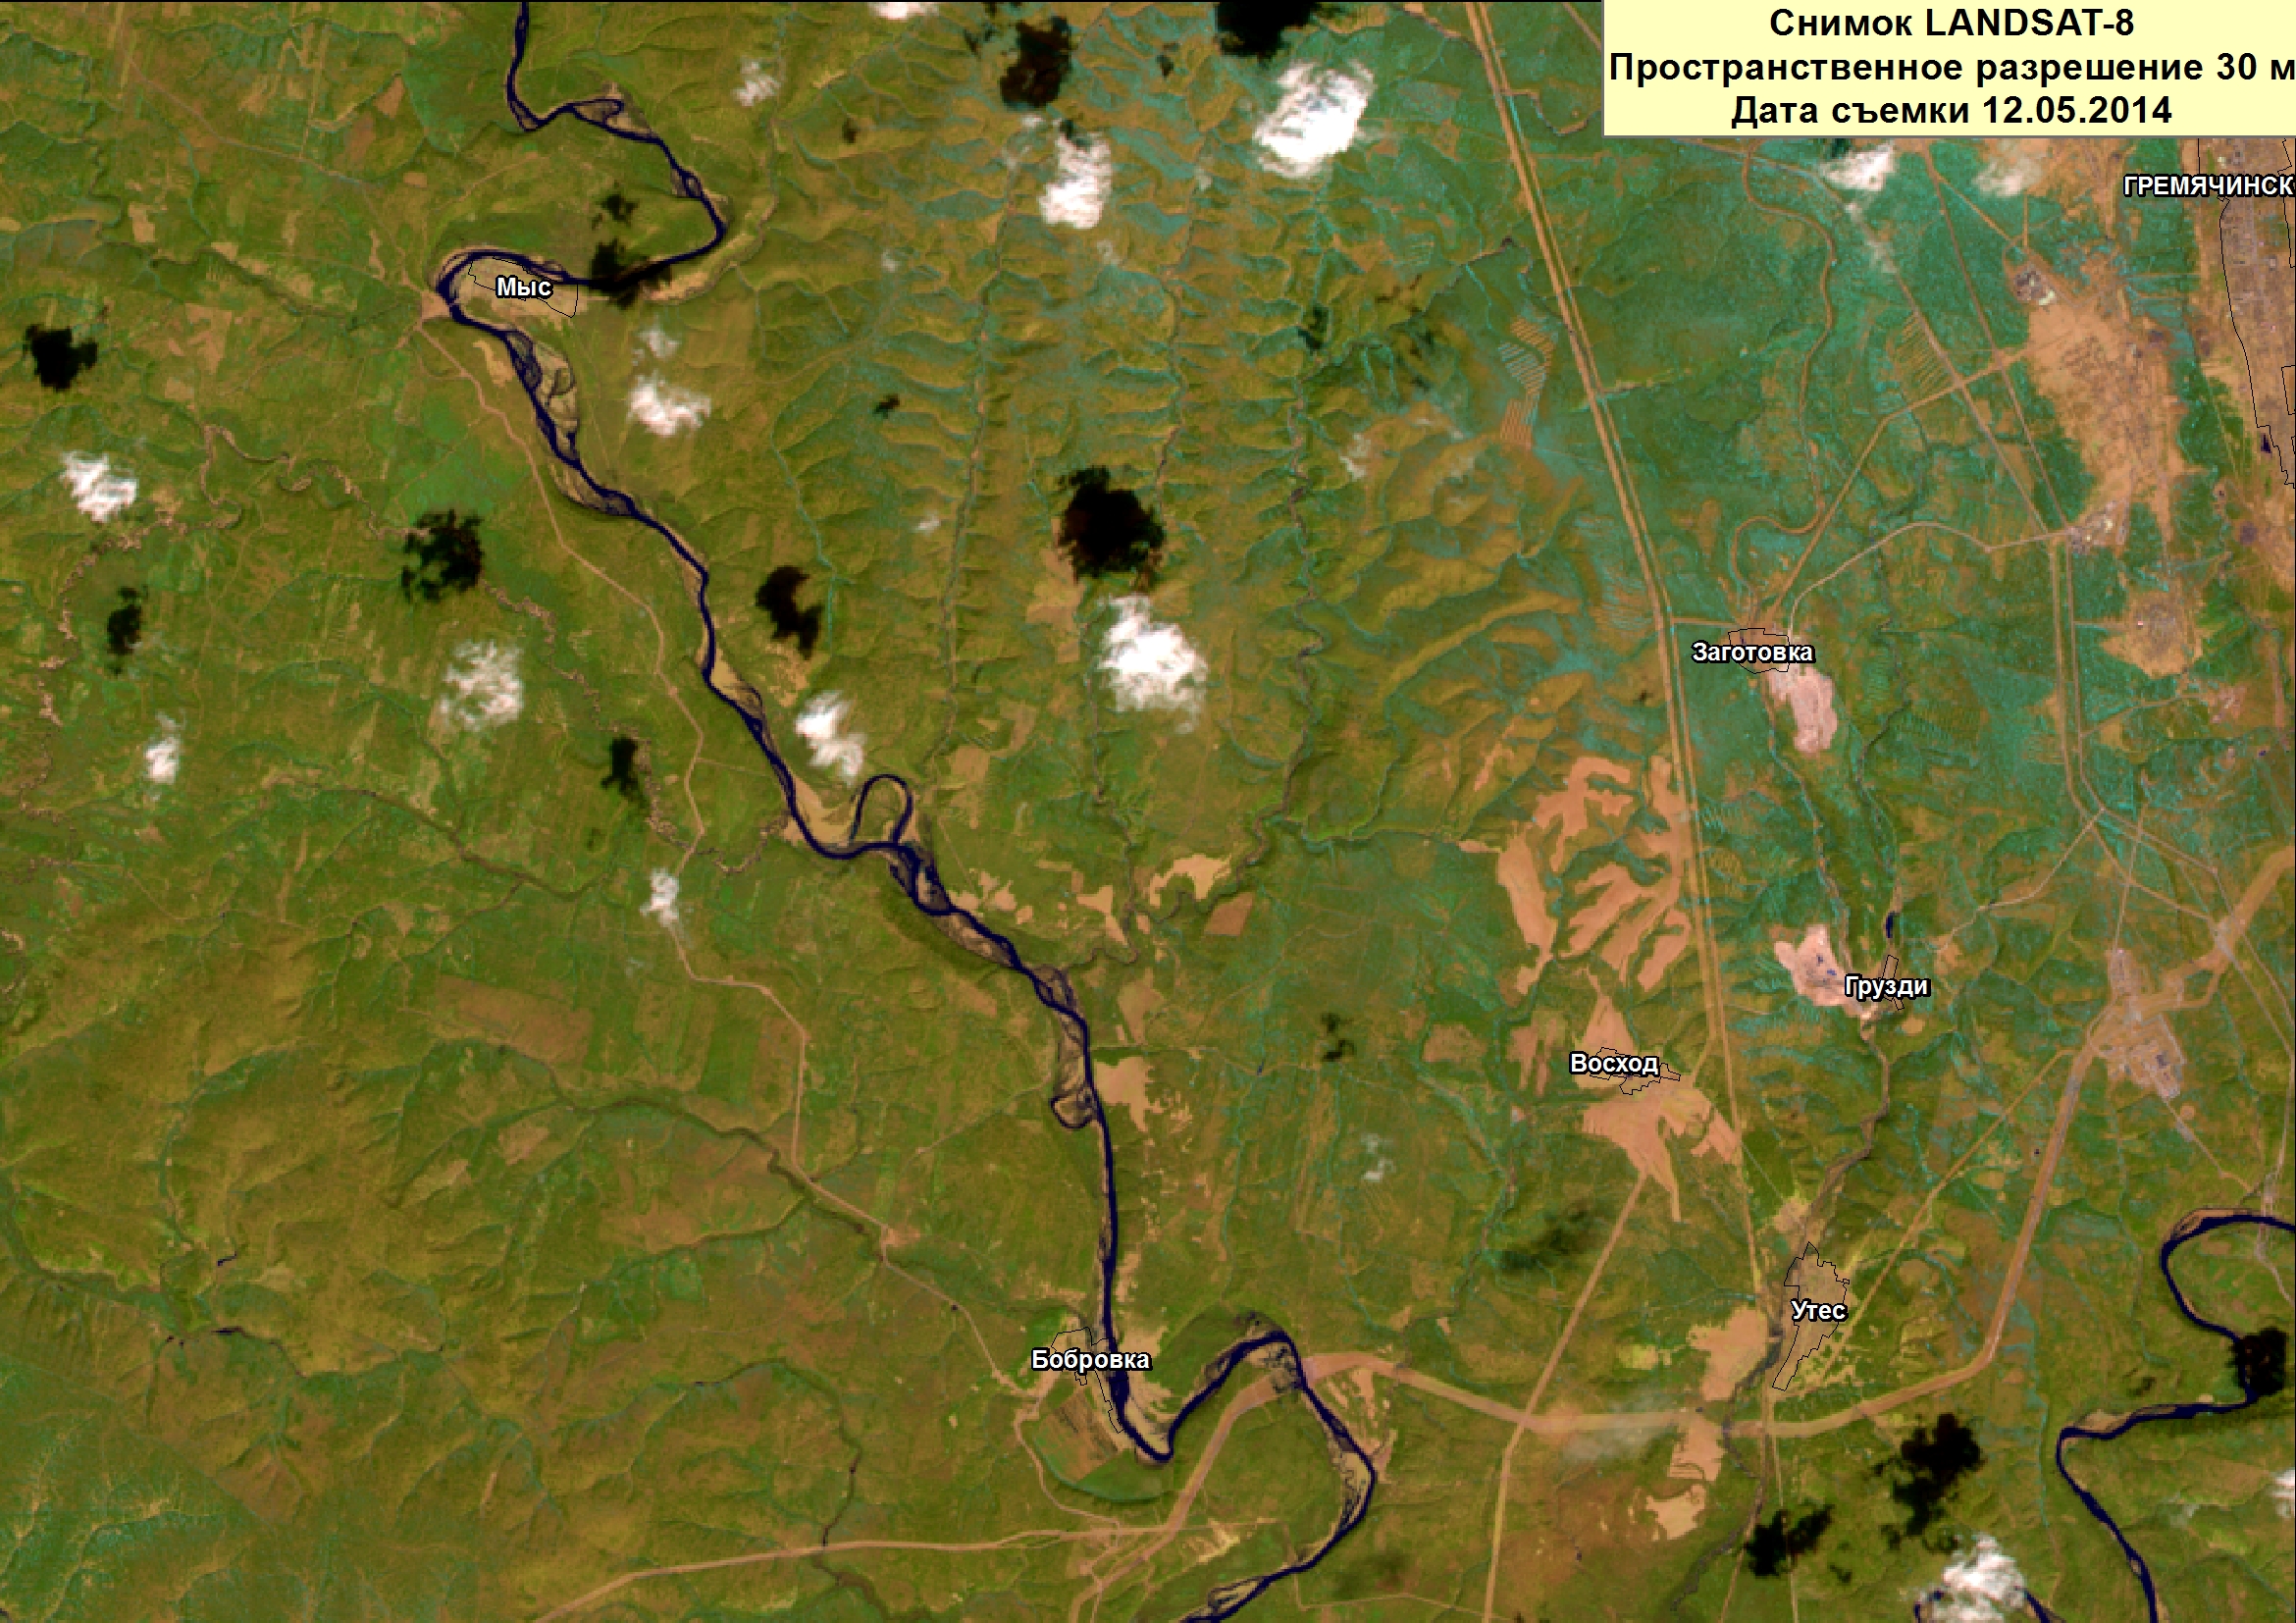 фото местности со спутника в реальном времени